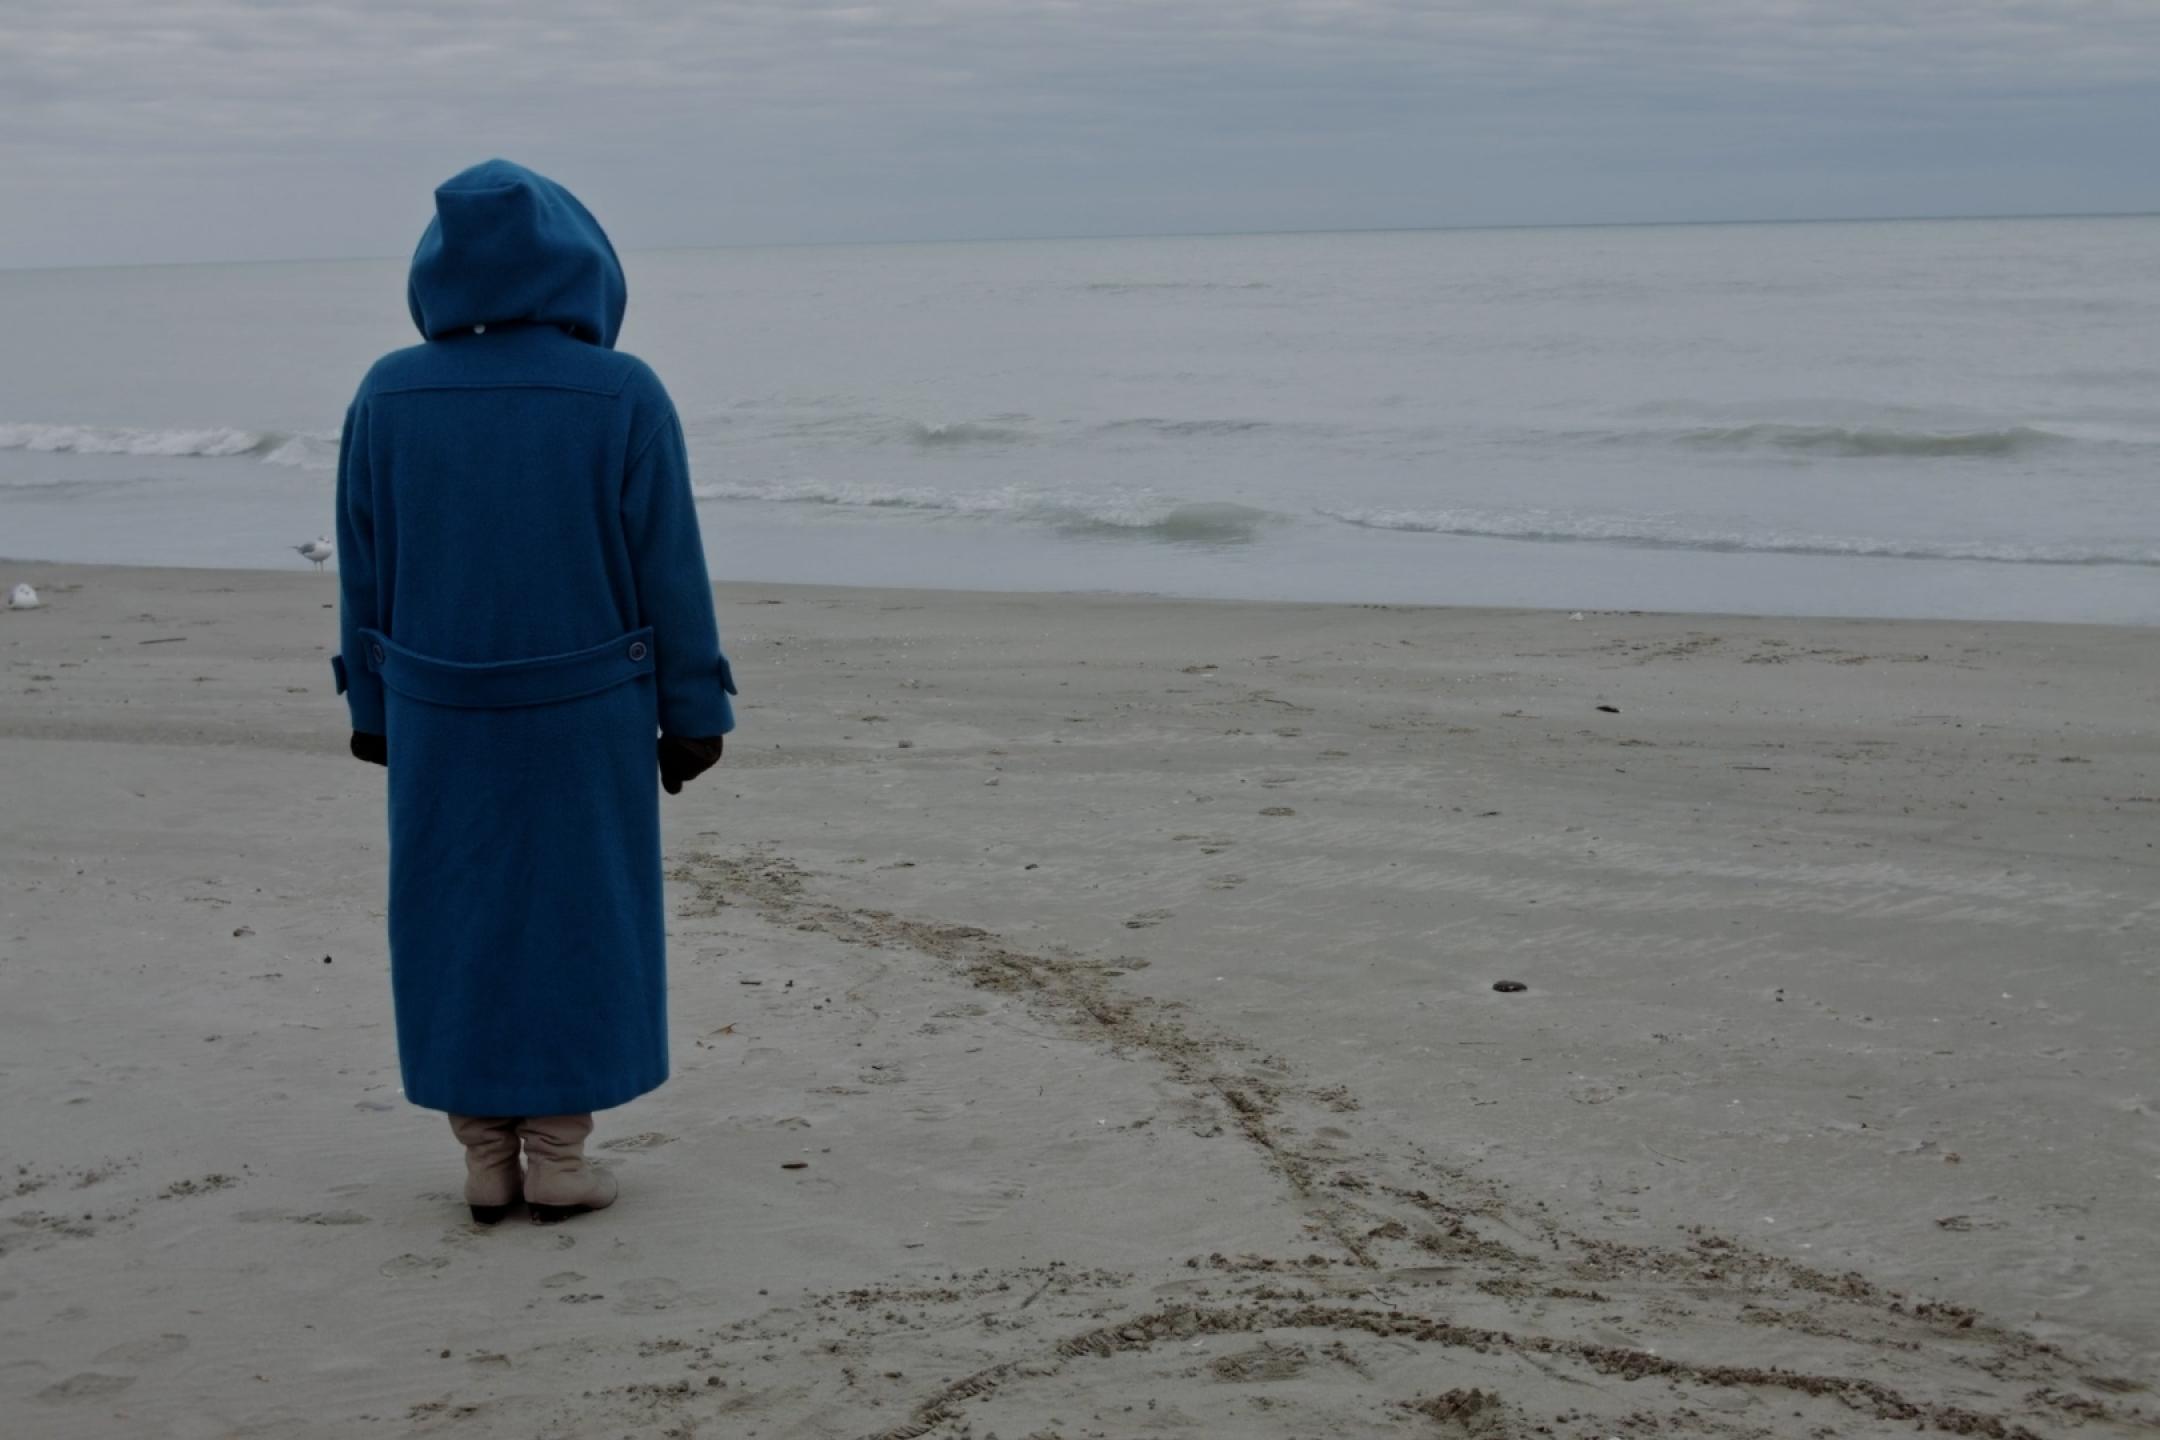 Am Strand, vor dem flachen, ruhigen Meer, steht eine Person in beinahe bodenlangem blauen Regenmantel mit dem Rücken zur Kamera. Sie hat die riesige Kapuze hochgezogen und schaut zum Meer.